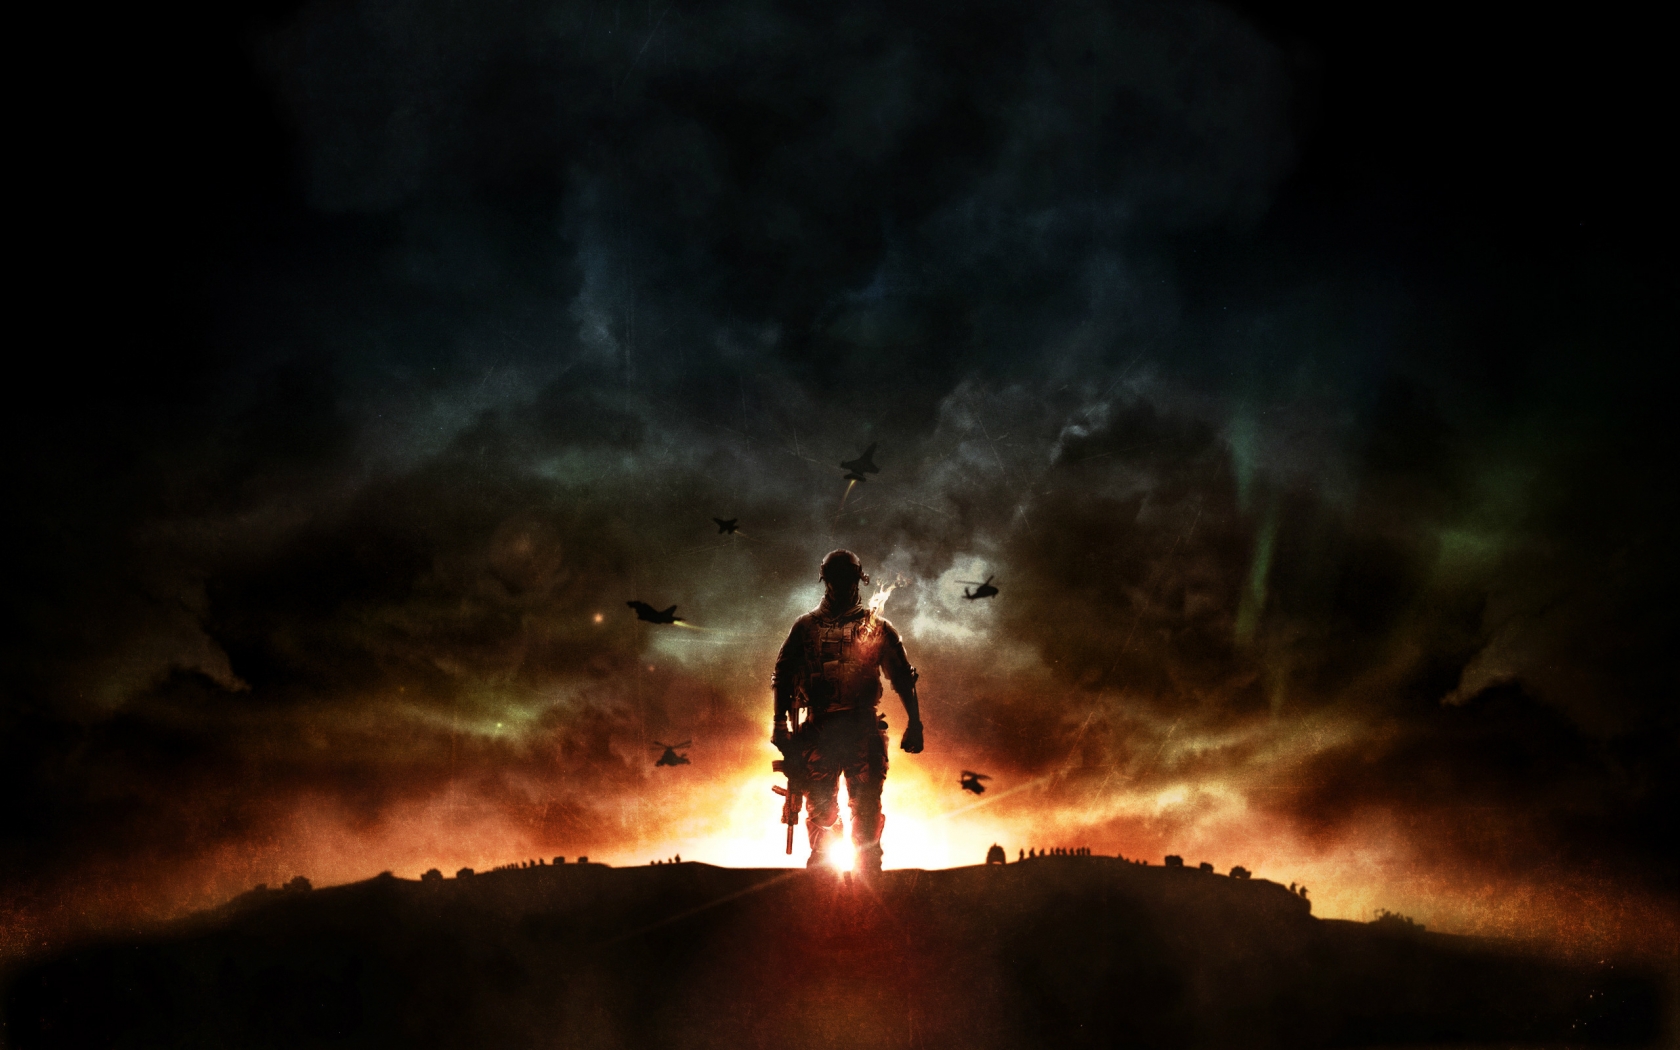 Battlefield 4 Sunset War for 1680 x 1050 widescreen resolution